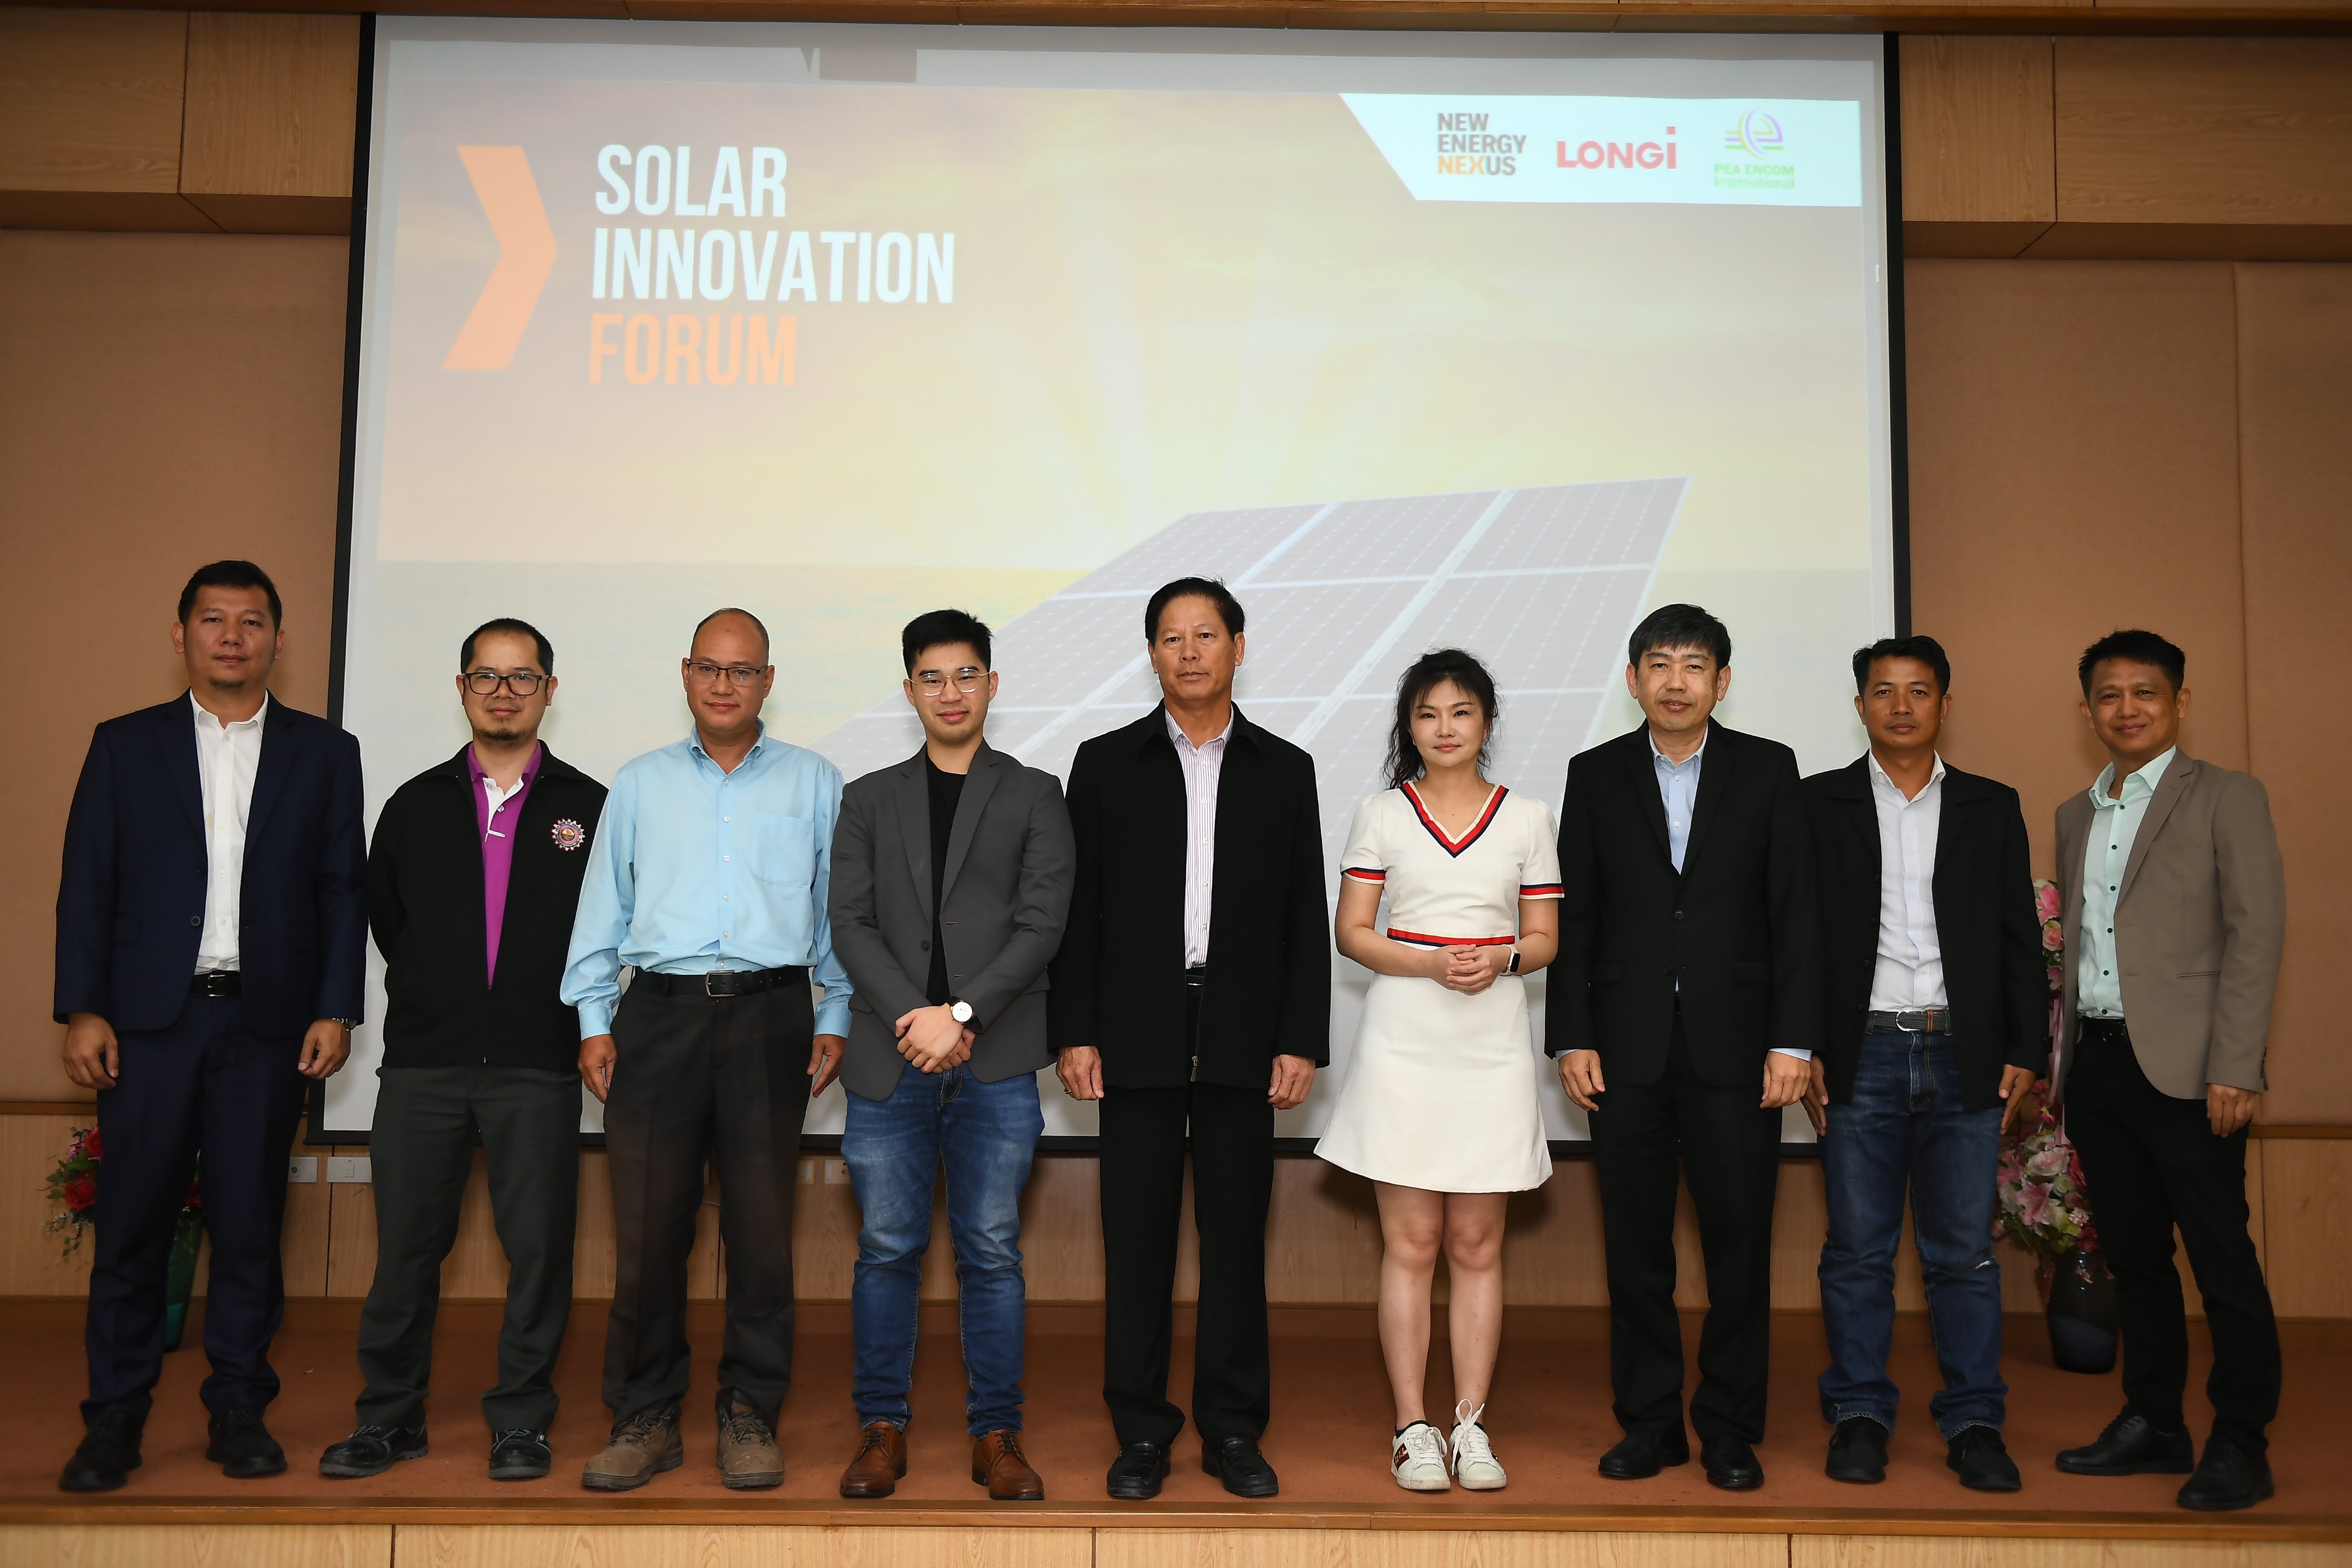 เปิดประชุมสุดยอดนวัตกรรมโซลาร์  ‘Solar Innovation Forum’ ครั้งแรกที่เชียงใหม่